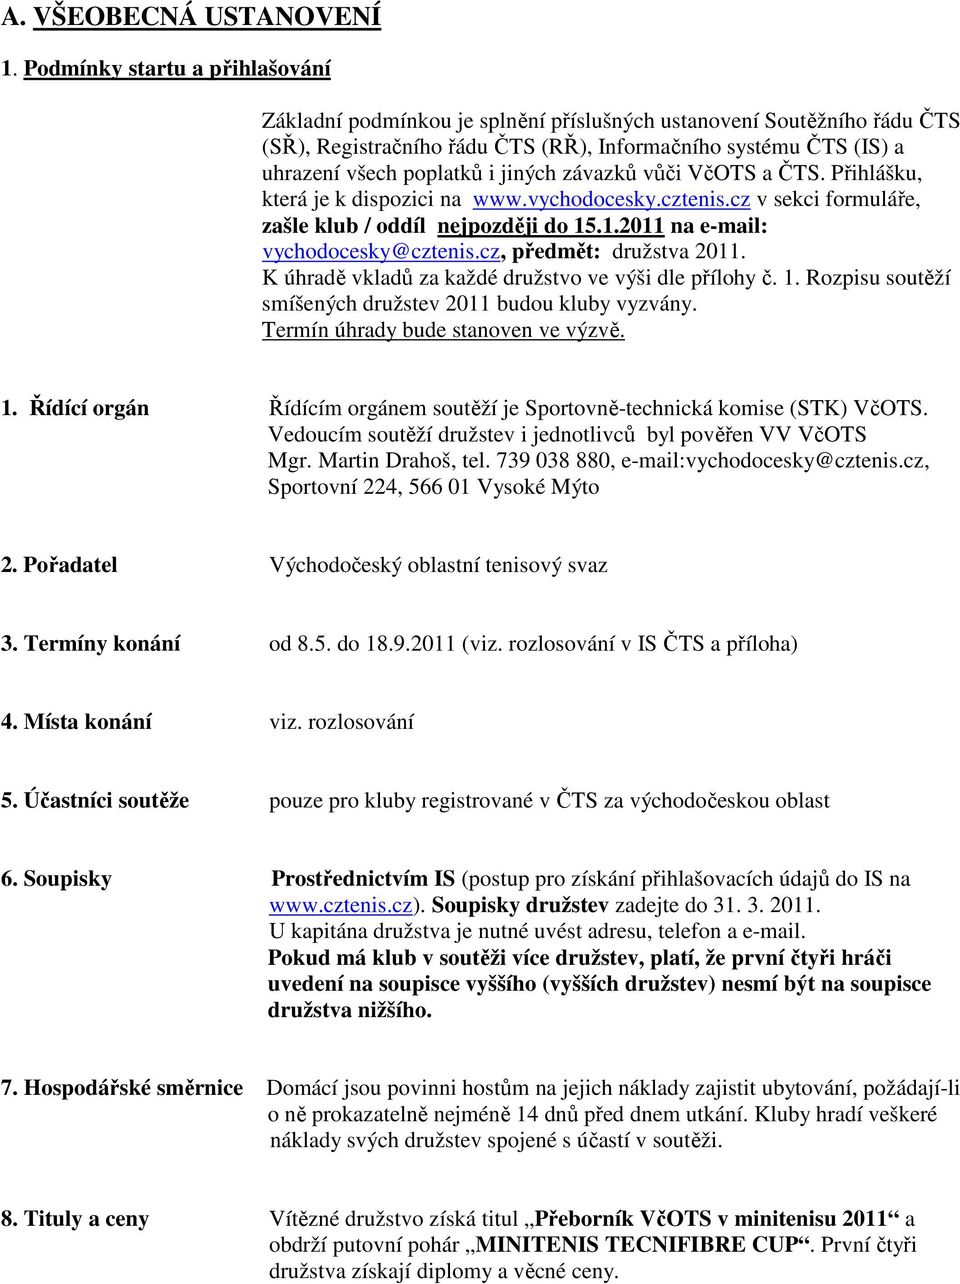 jiných závazků vůči VčOTS a ČTS. Přihlášku, která je k dispozici na www.vychodocesky.cztenis.cz v sekci formuláře, zašle klub / oddíl nejpozději do 15.1.2011 na e-mail: vychodocesky@cztenis.